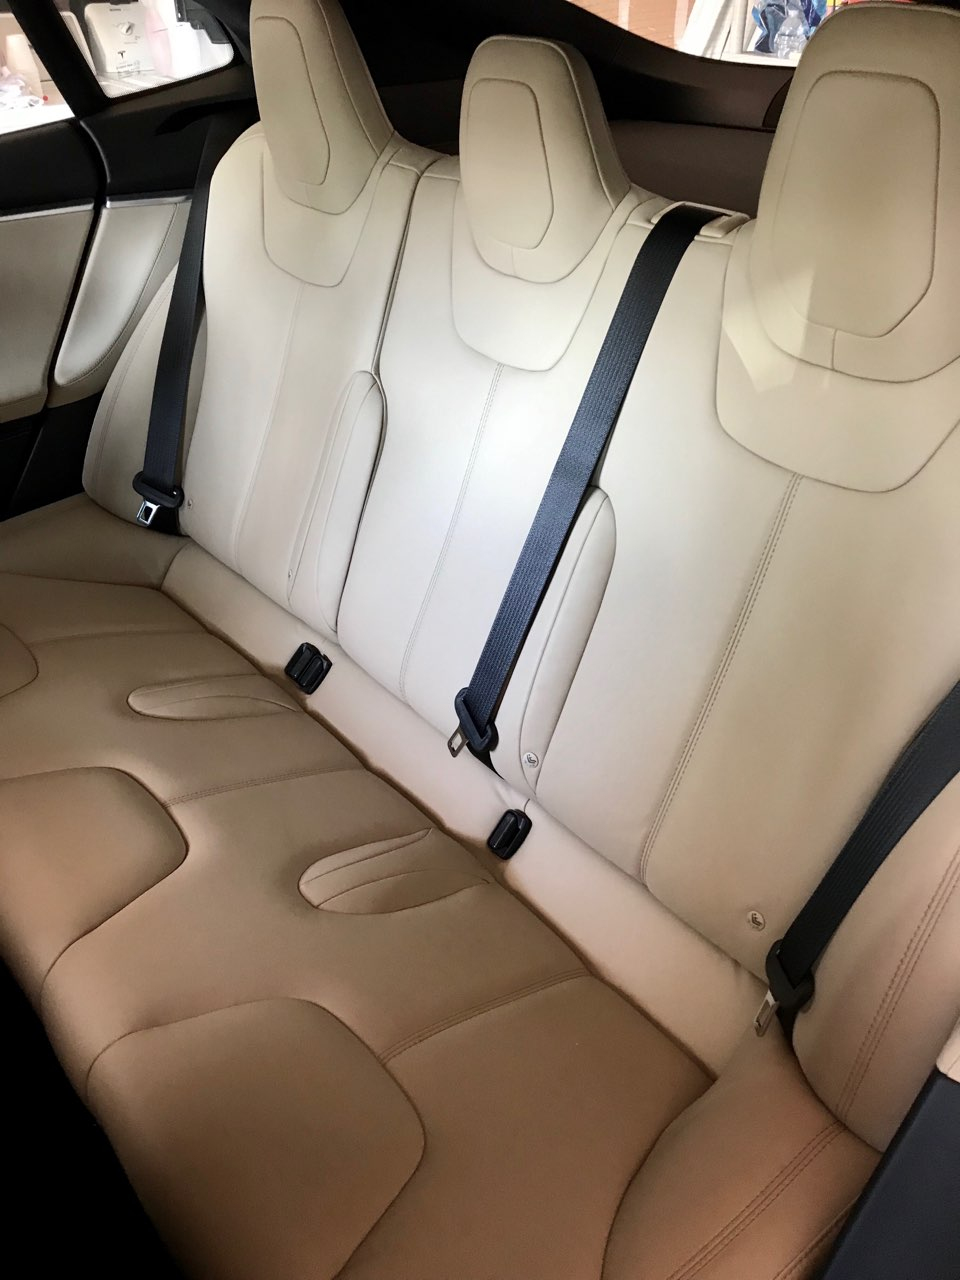 Tesla backseat.jpg